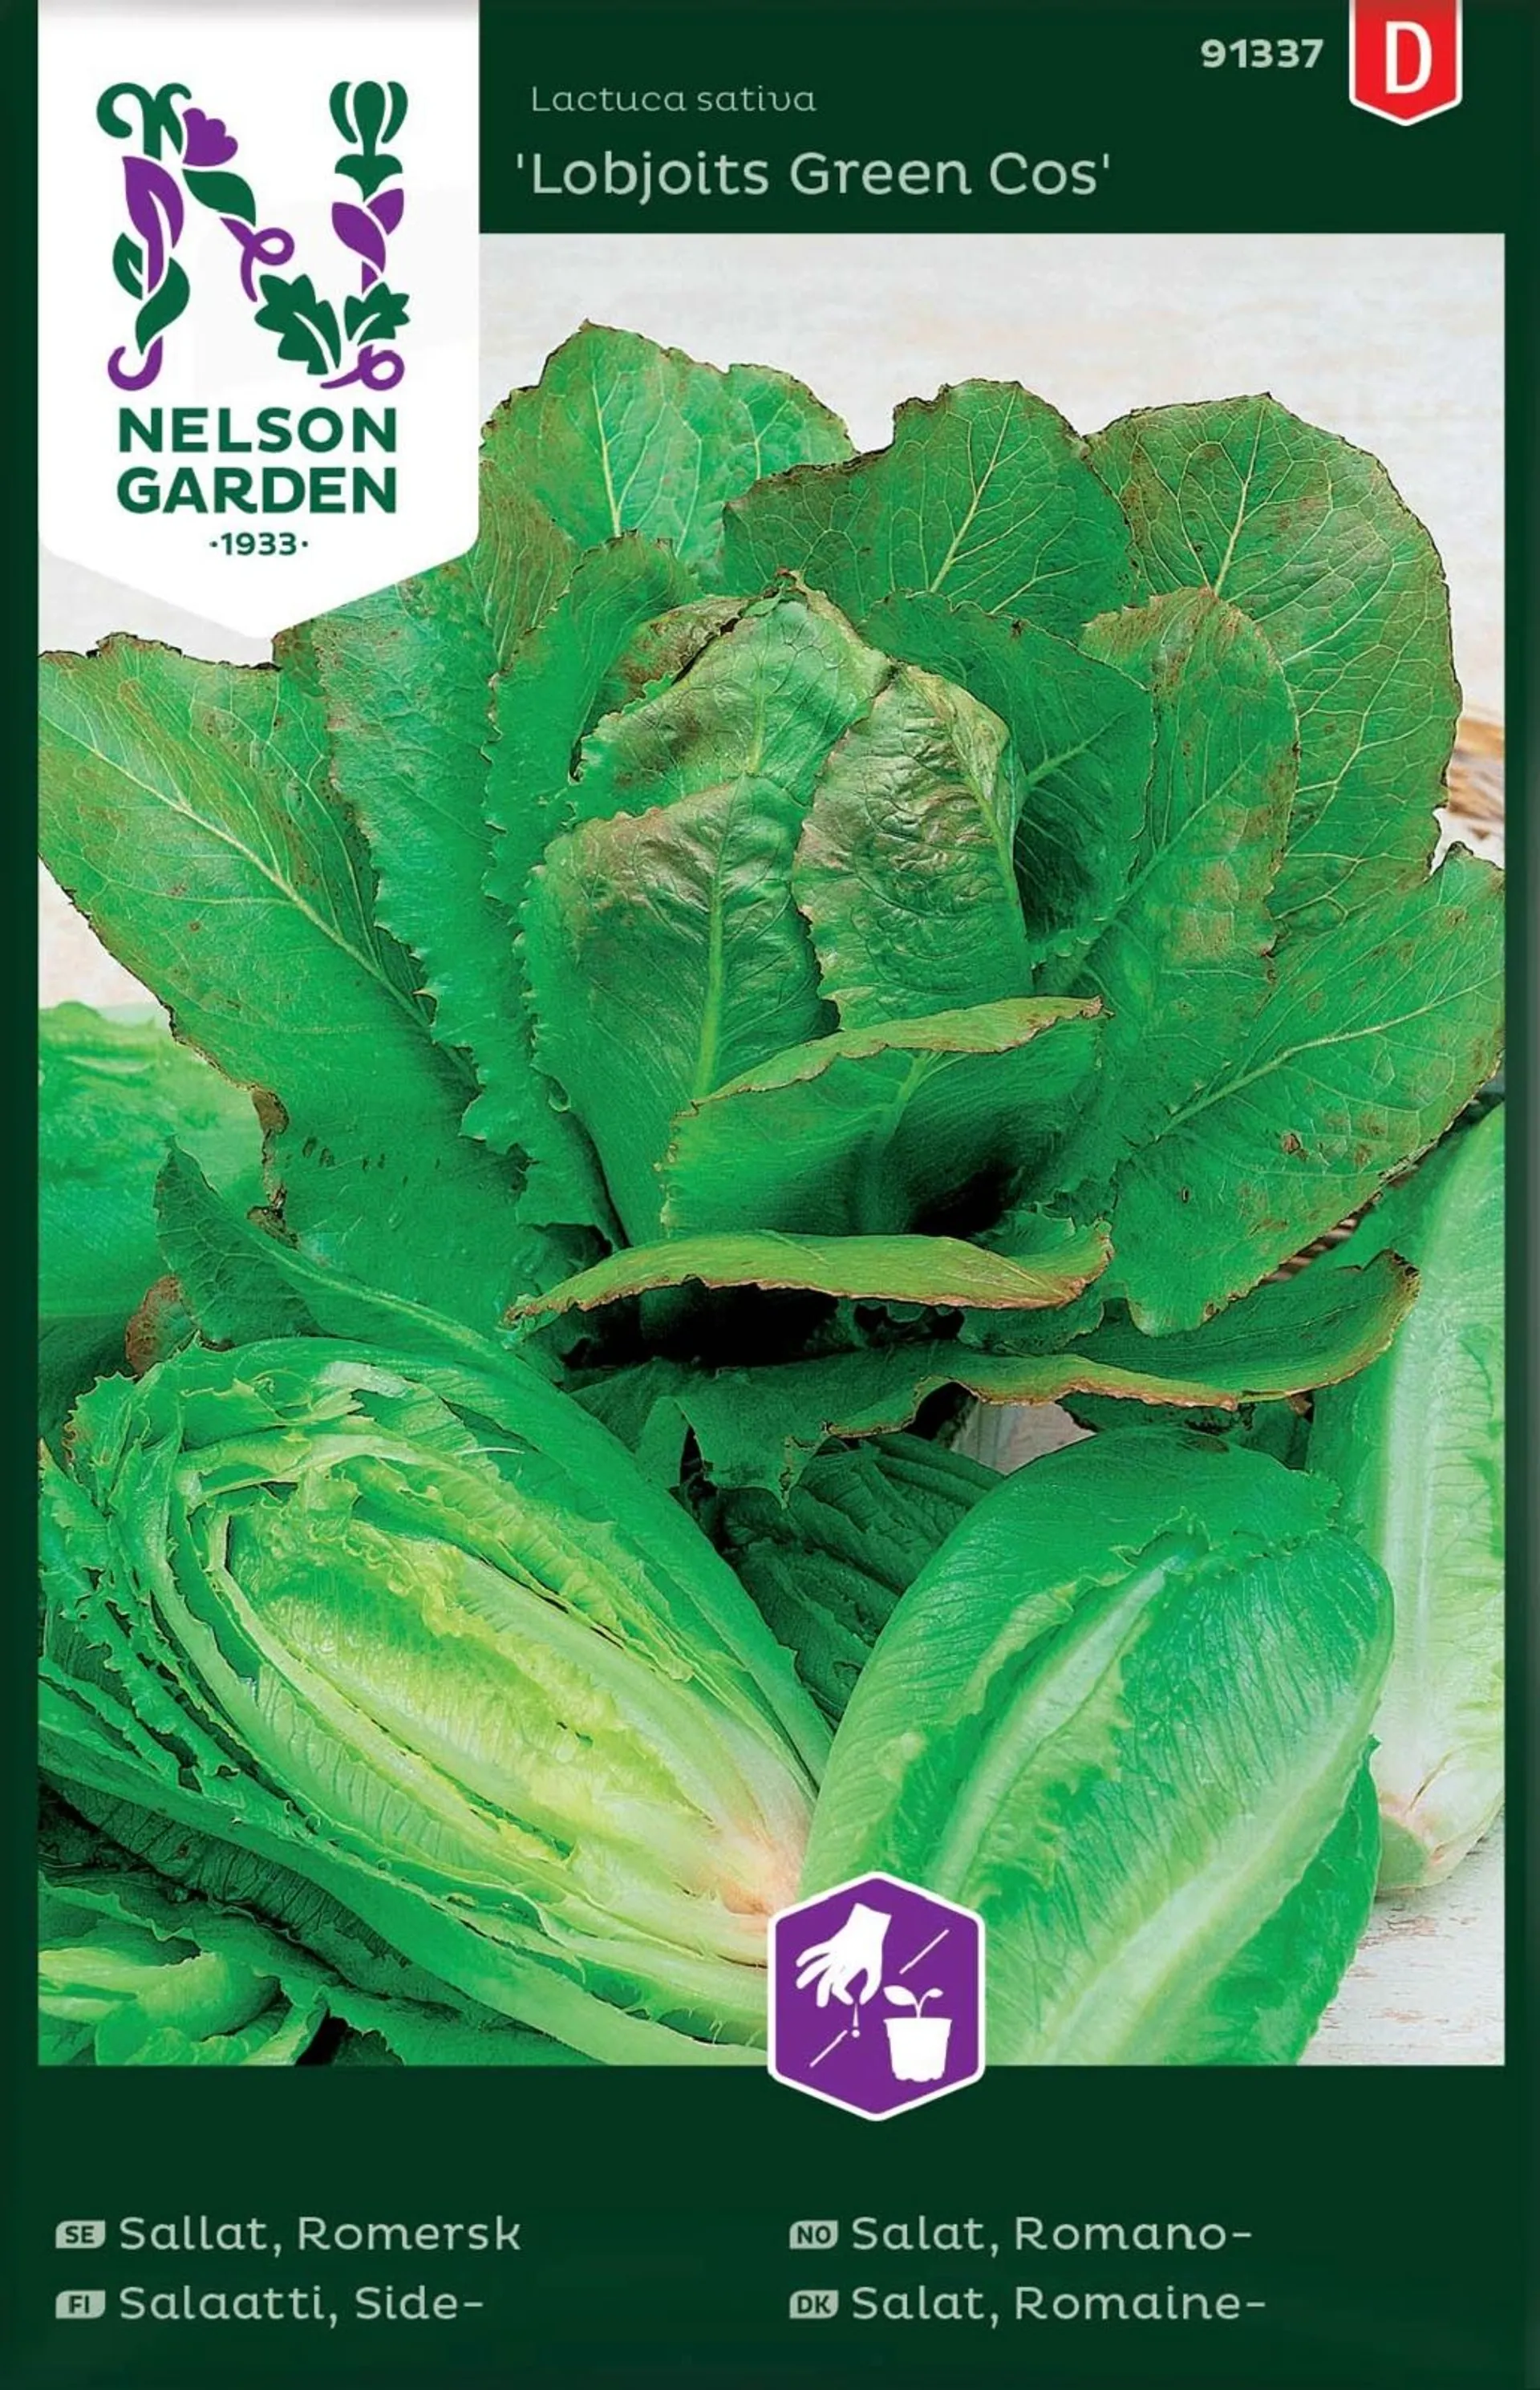 Nelson Garden Siemen Salaatti, Side-, Lobjoits Green Cos